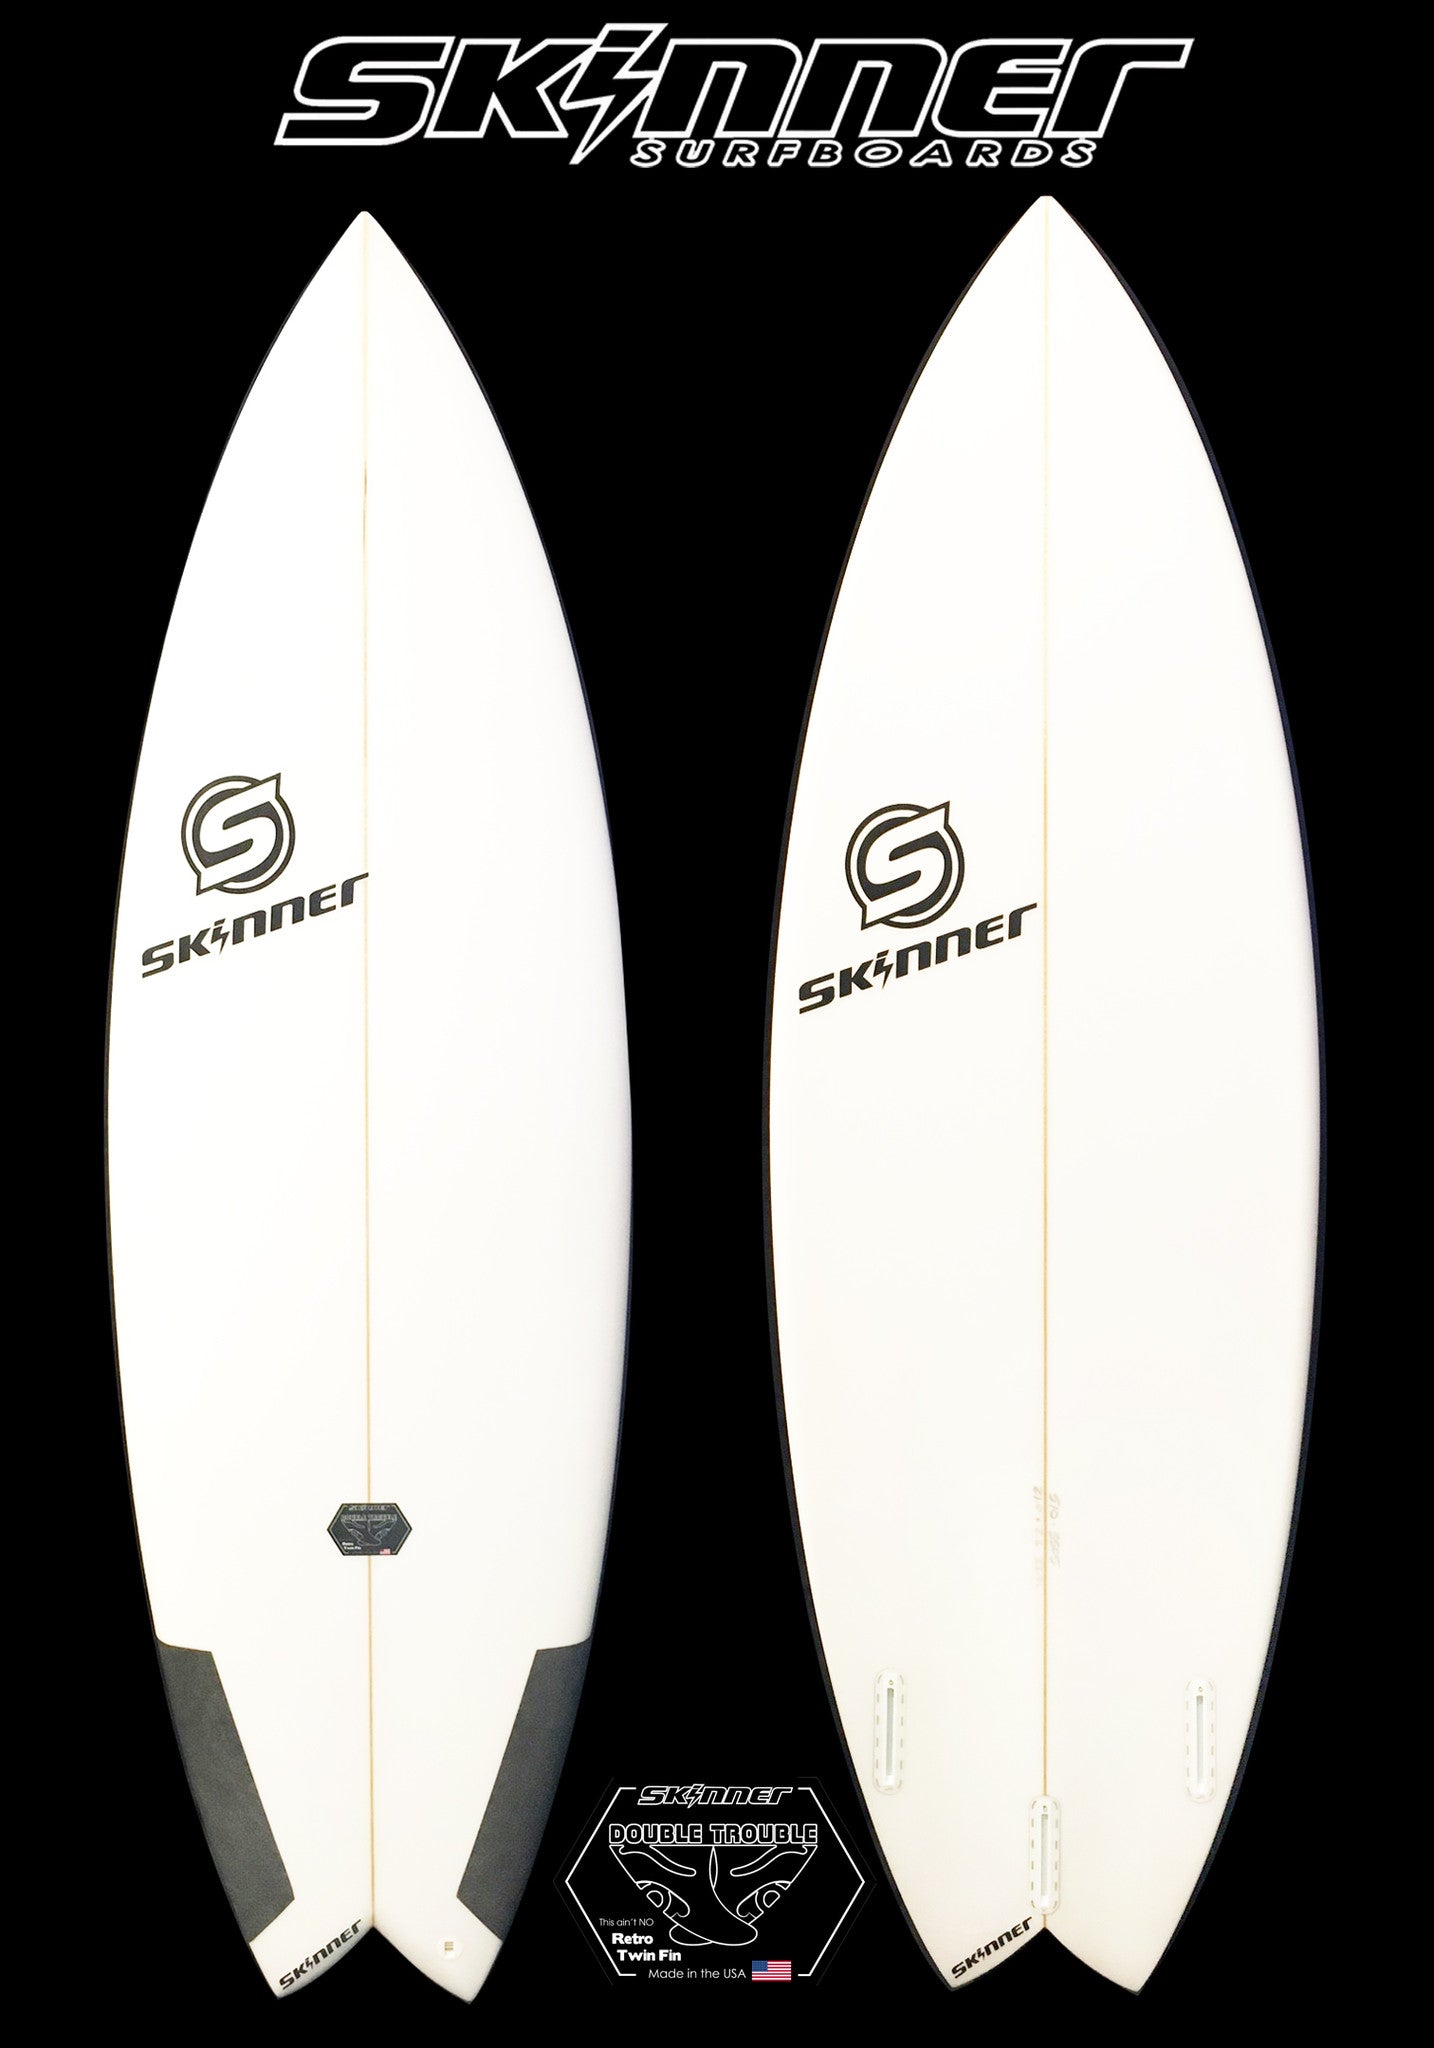 SOLD Skinner Double Trouble Performance Twin Fin+ Surfboard 5'10 x 21" x 2 5/8" 33.3 Liters Surfboard